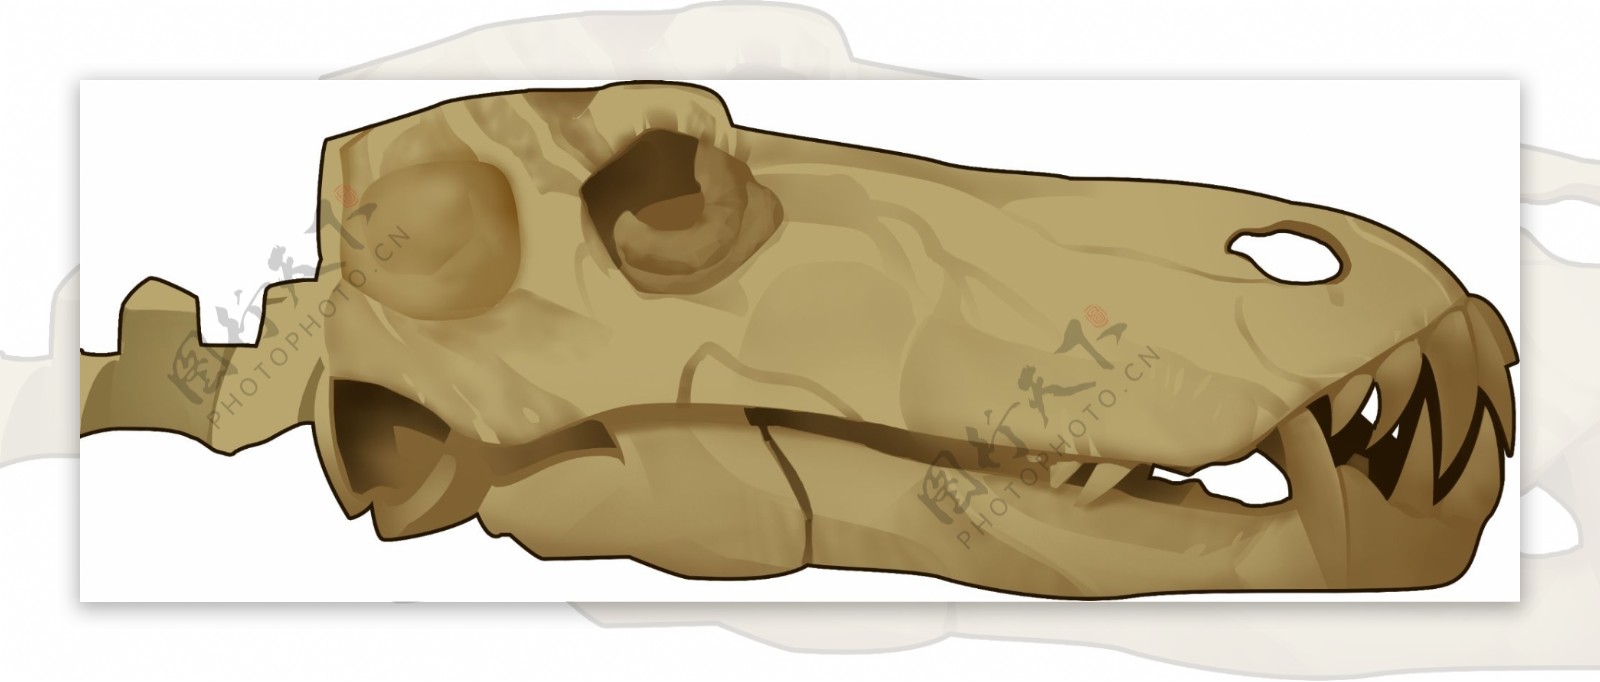 恐龙头骨